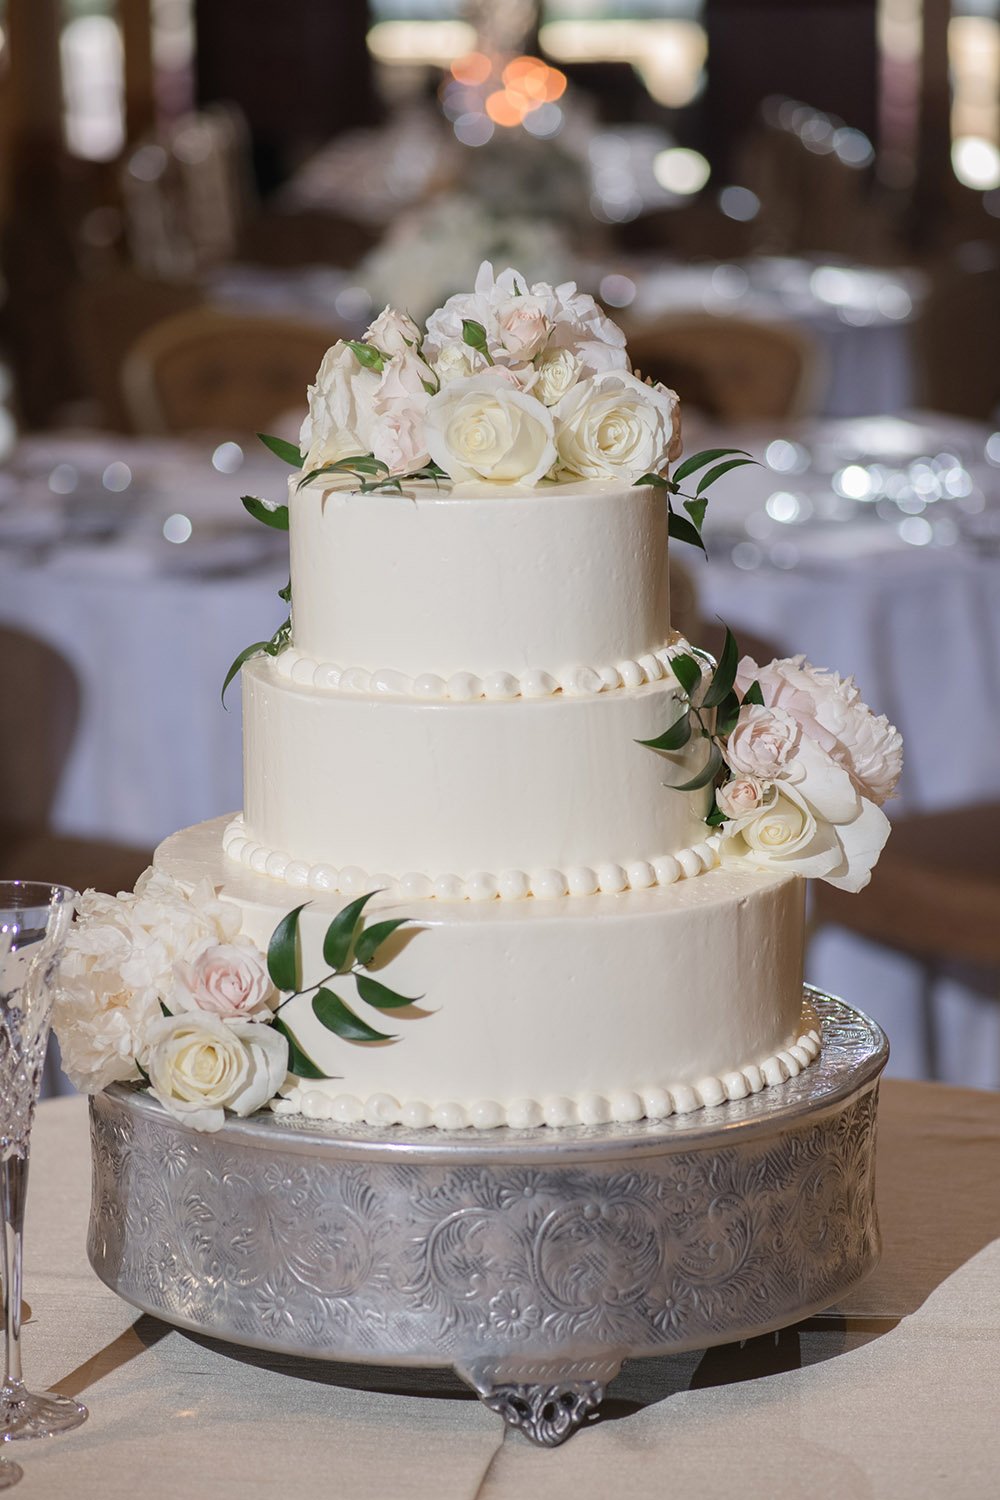 wedding cake - classic - white - roses